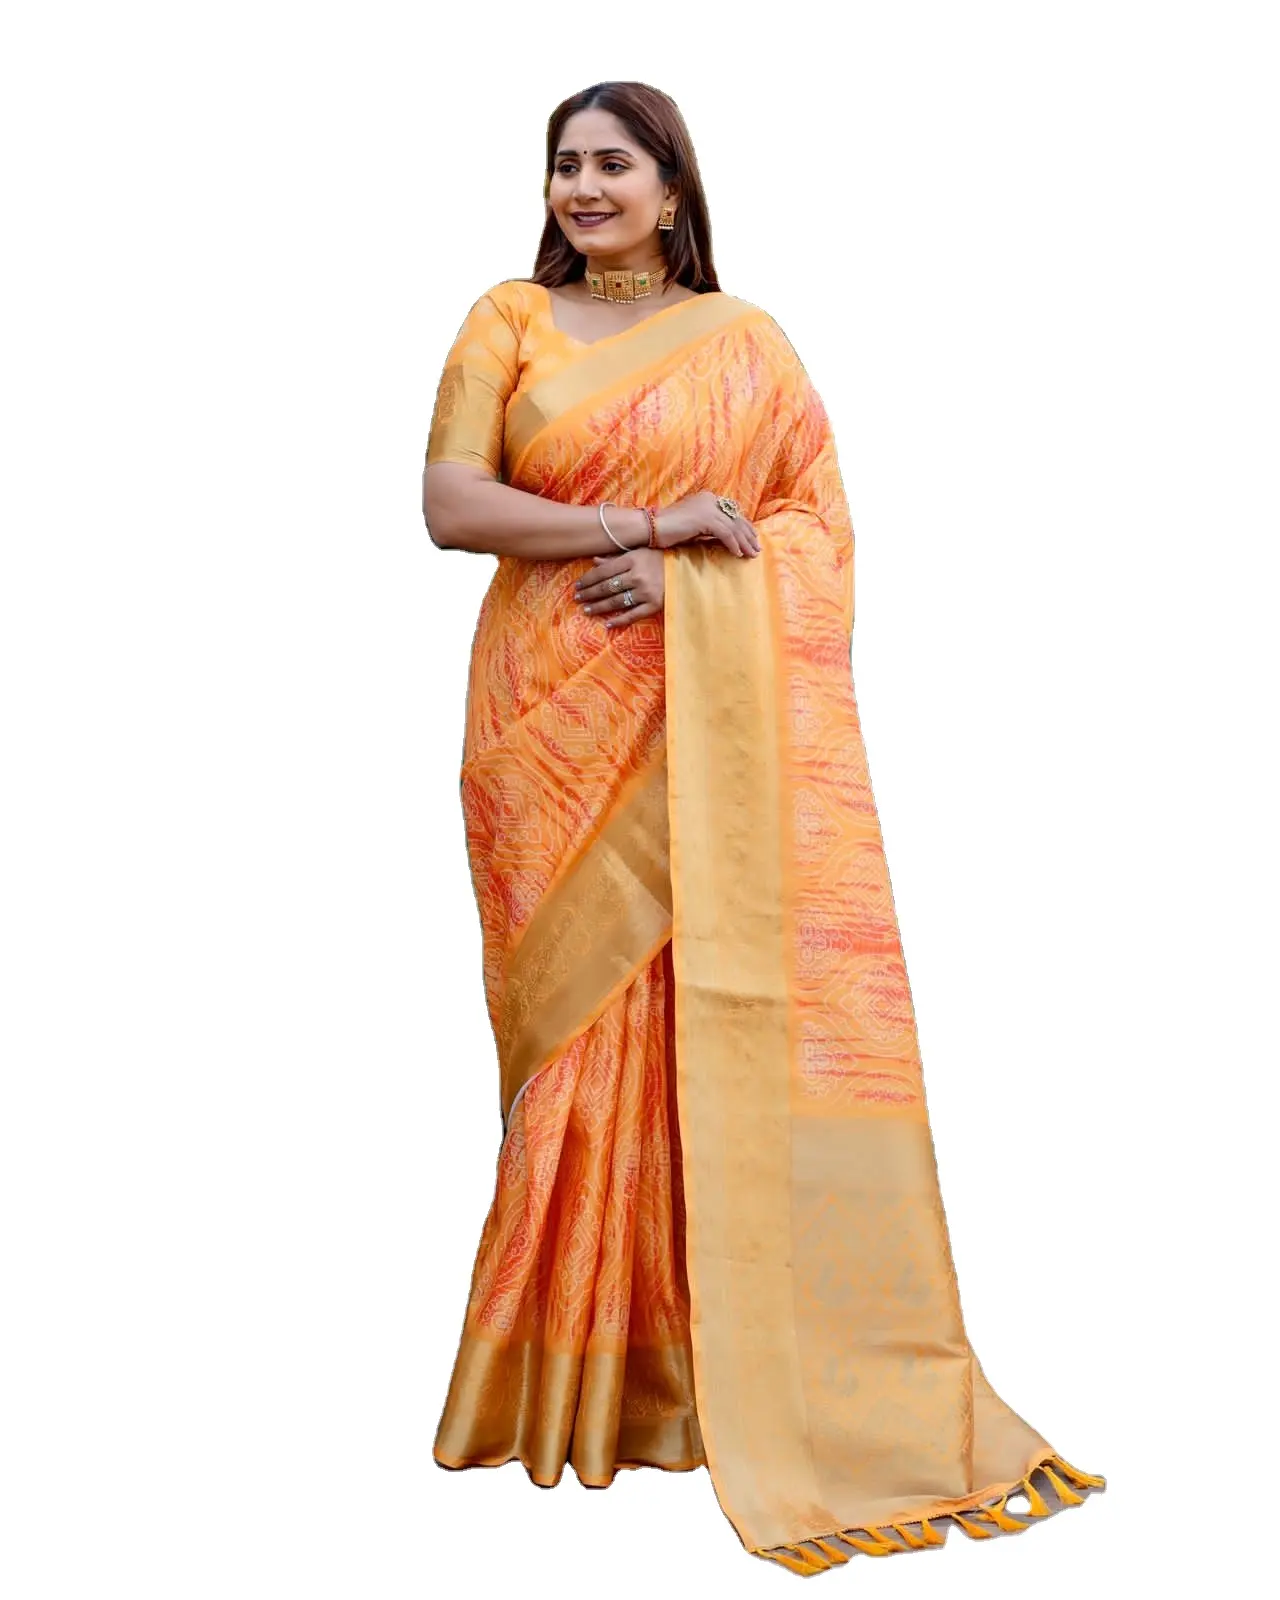 Оптовая продажа, премиальный шелк Dola с цифровой печатью, работа, сари с блузкой, производство в Индии